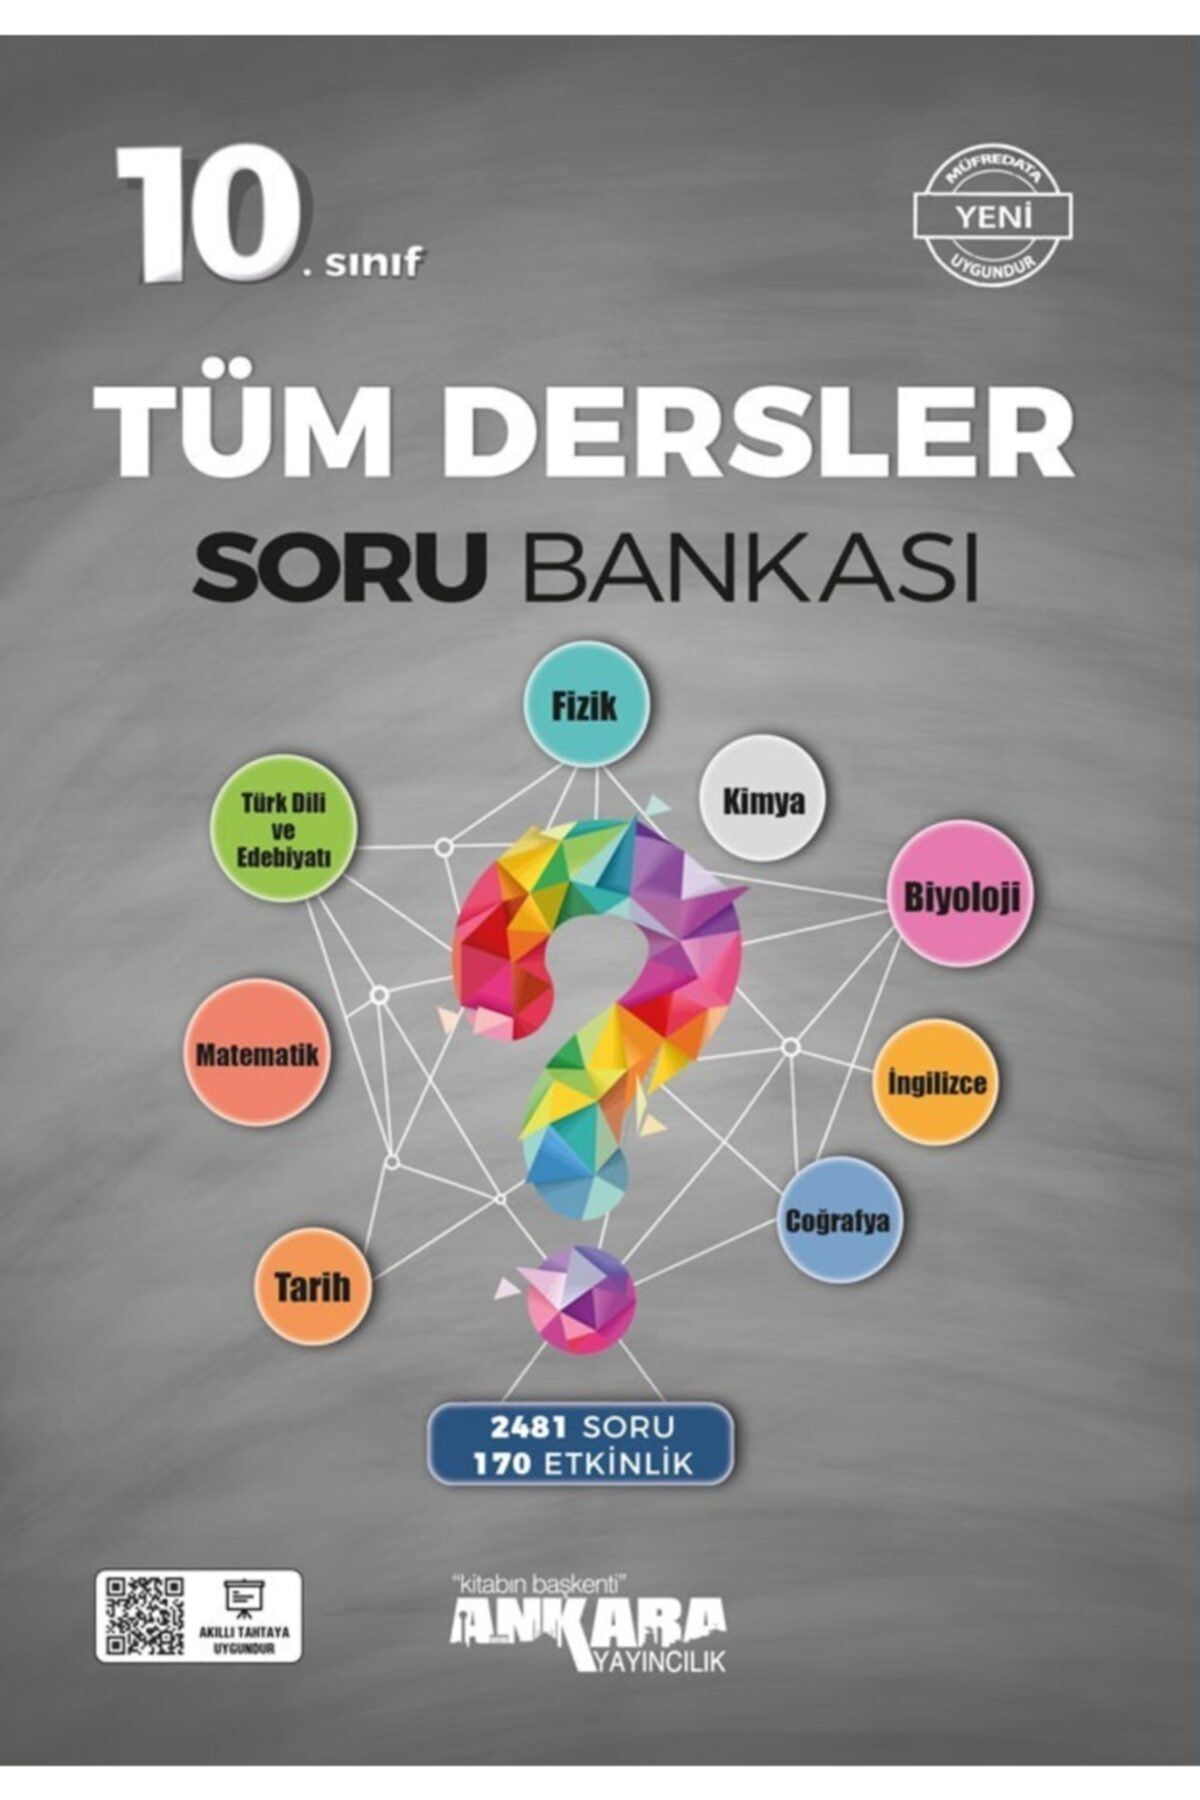 Ankara Yayıncılık Ankara 10. Sınıf Tüm Dersler Soru Bankası